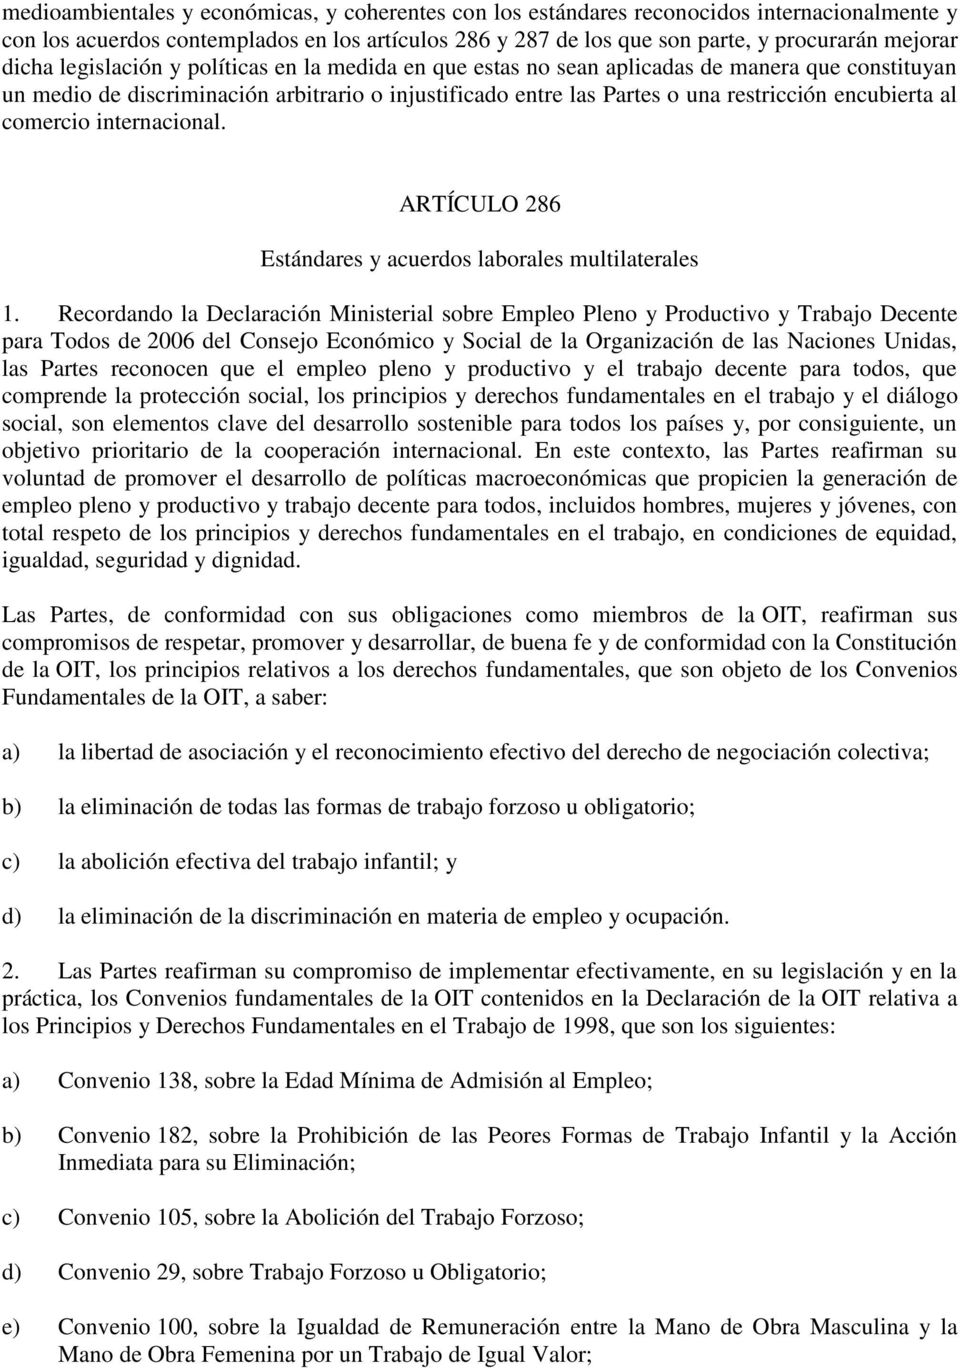 al comercio internacional. ARTÍCULO 286 Estándares y acuerdos laborales multilaterales 1.